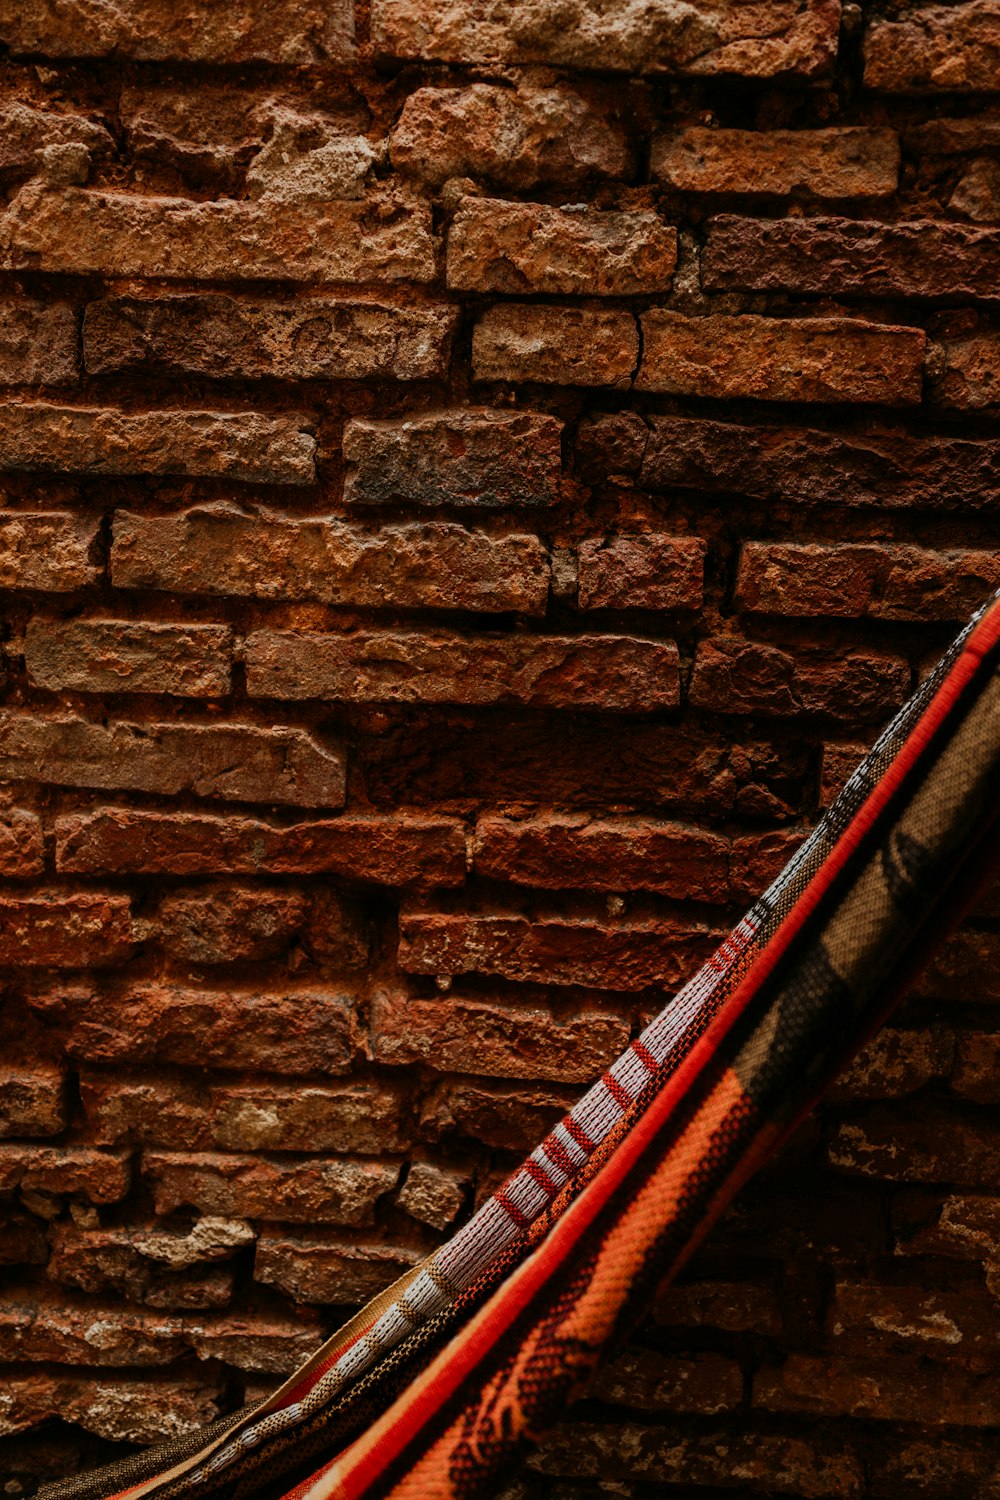 Guitarra eléctrica roja y negra apoyada en una pared de ladrillo marrón